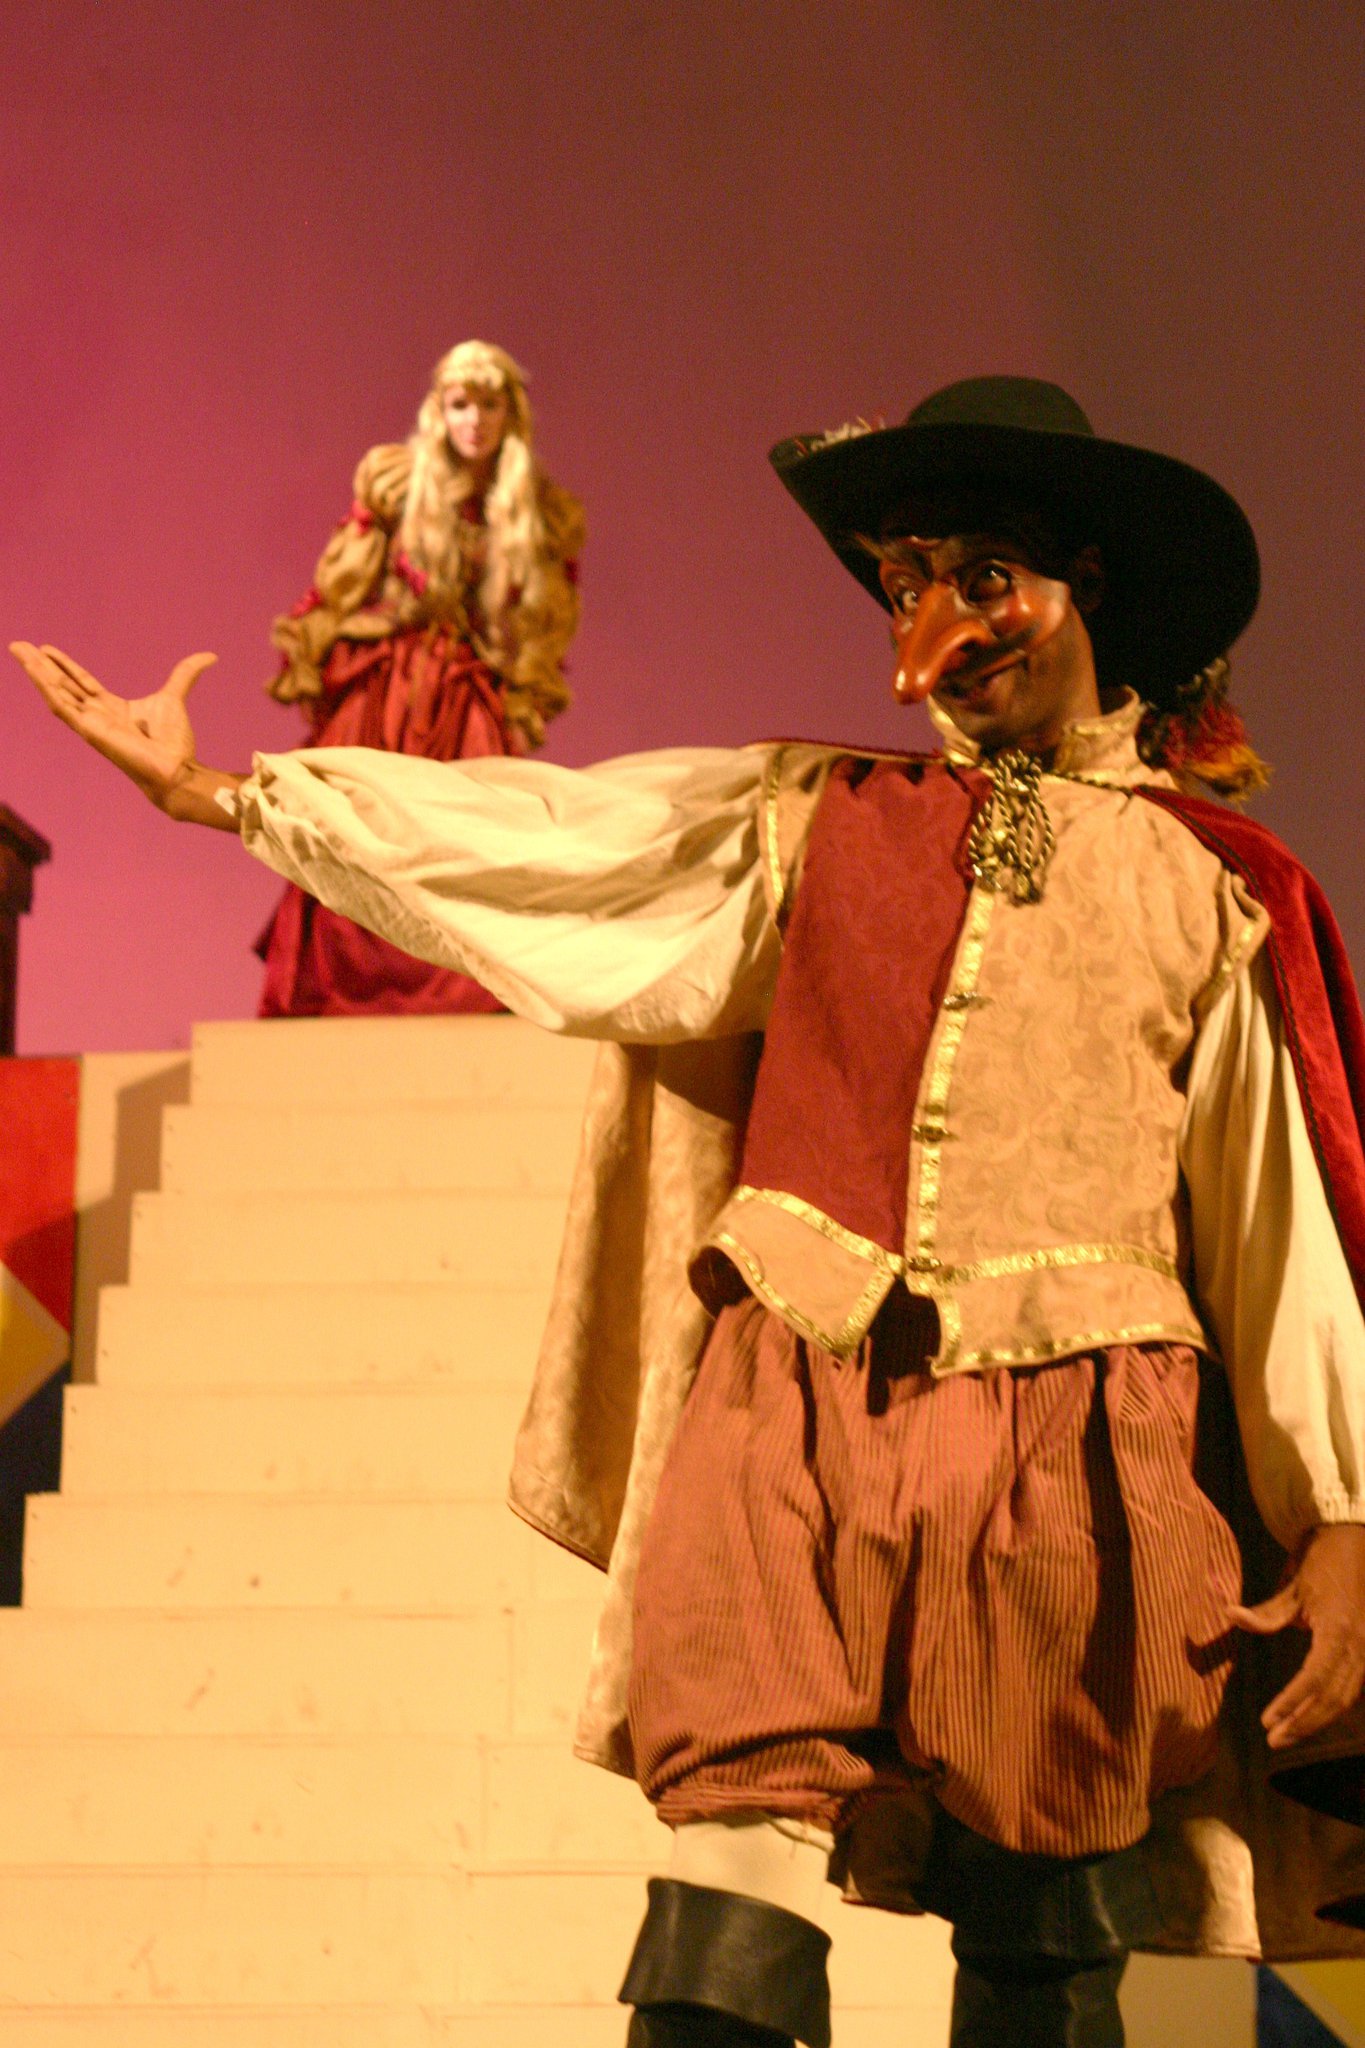 Prince Morocco in the Commedia Dell'Arte version of the Merchant of Venice